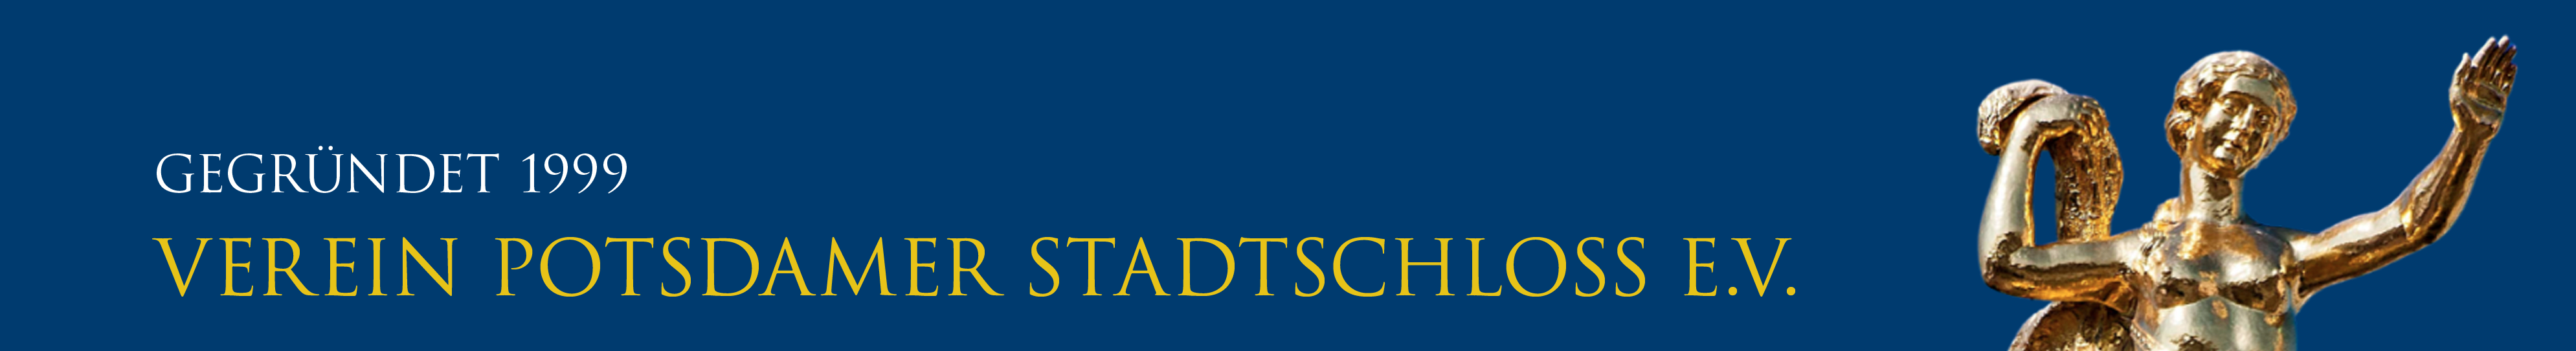 Verein Potsdamer Stadtschloss e.V. Logo